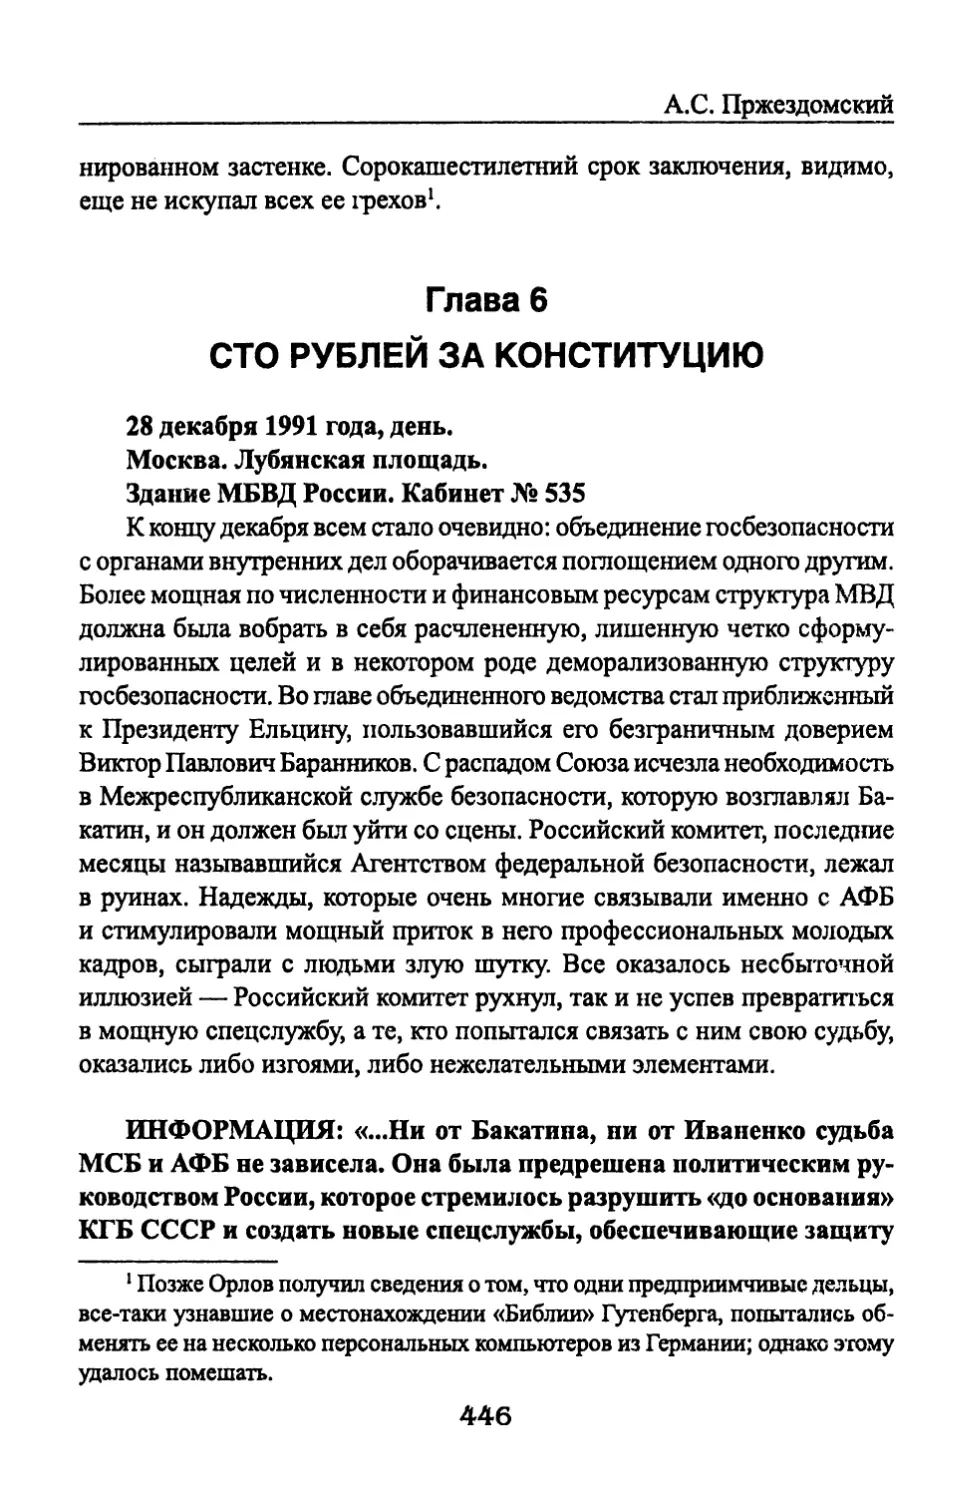 Глава 6. Сто рублей за Конституцию